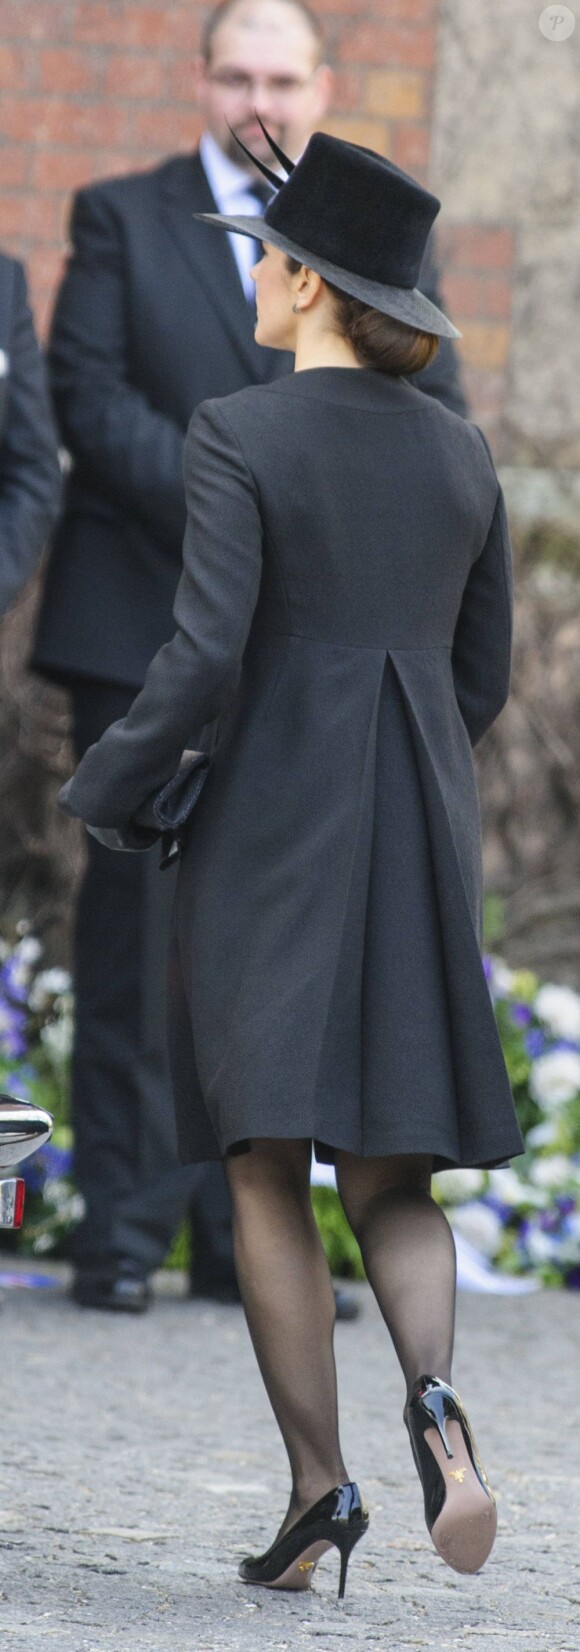 La famille royale danoise, très attristée par la mort du magnat Arnold Maersk Mc-Kinney Møller, décédé le 16 avril 2012 tandis que la reine Margrethe II célébrait son 72e anniversaire, assistait à ses funérailles en l'église Holmen de Copenhague le 21 avril 2012.